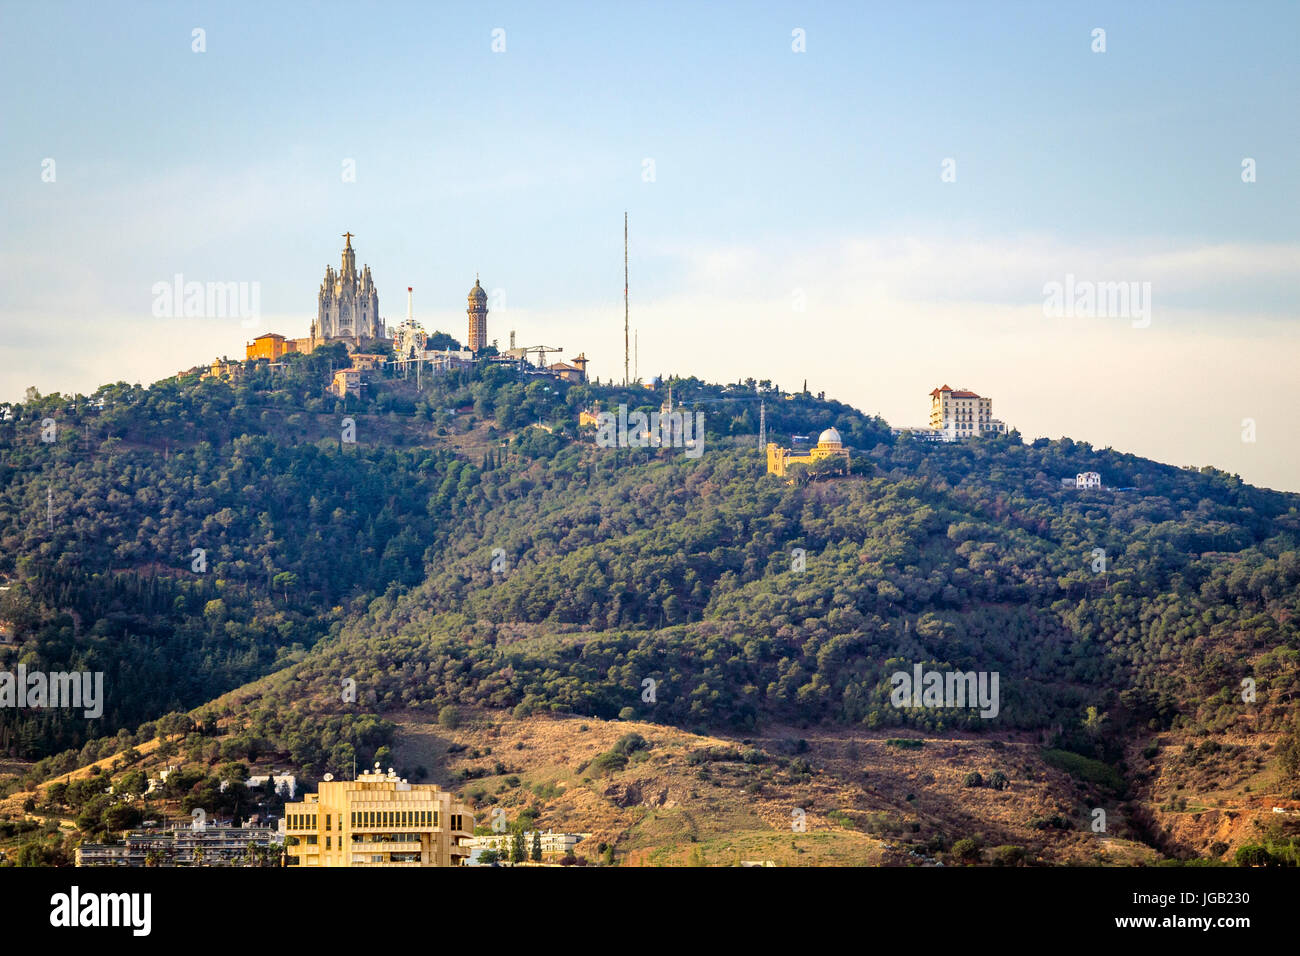 Tibidabo amusemnet Park and church of sacred heart, Barcelona, Catalonia Stock Photo